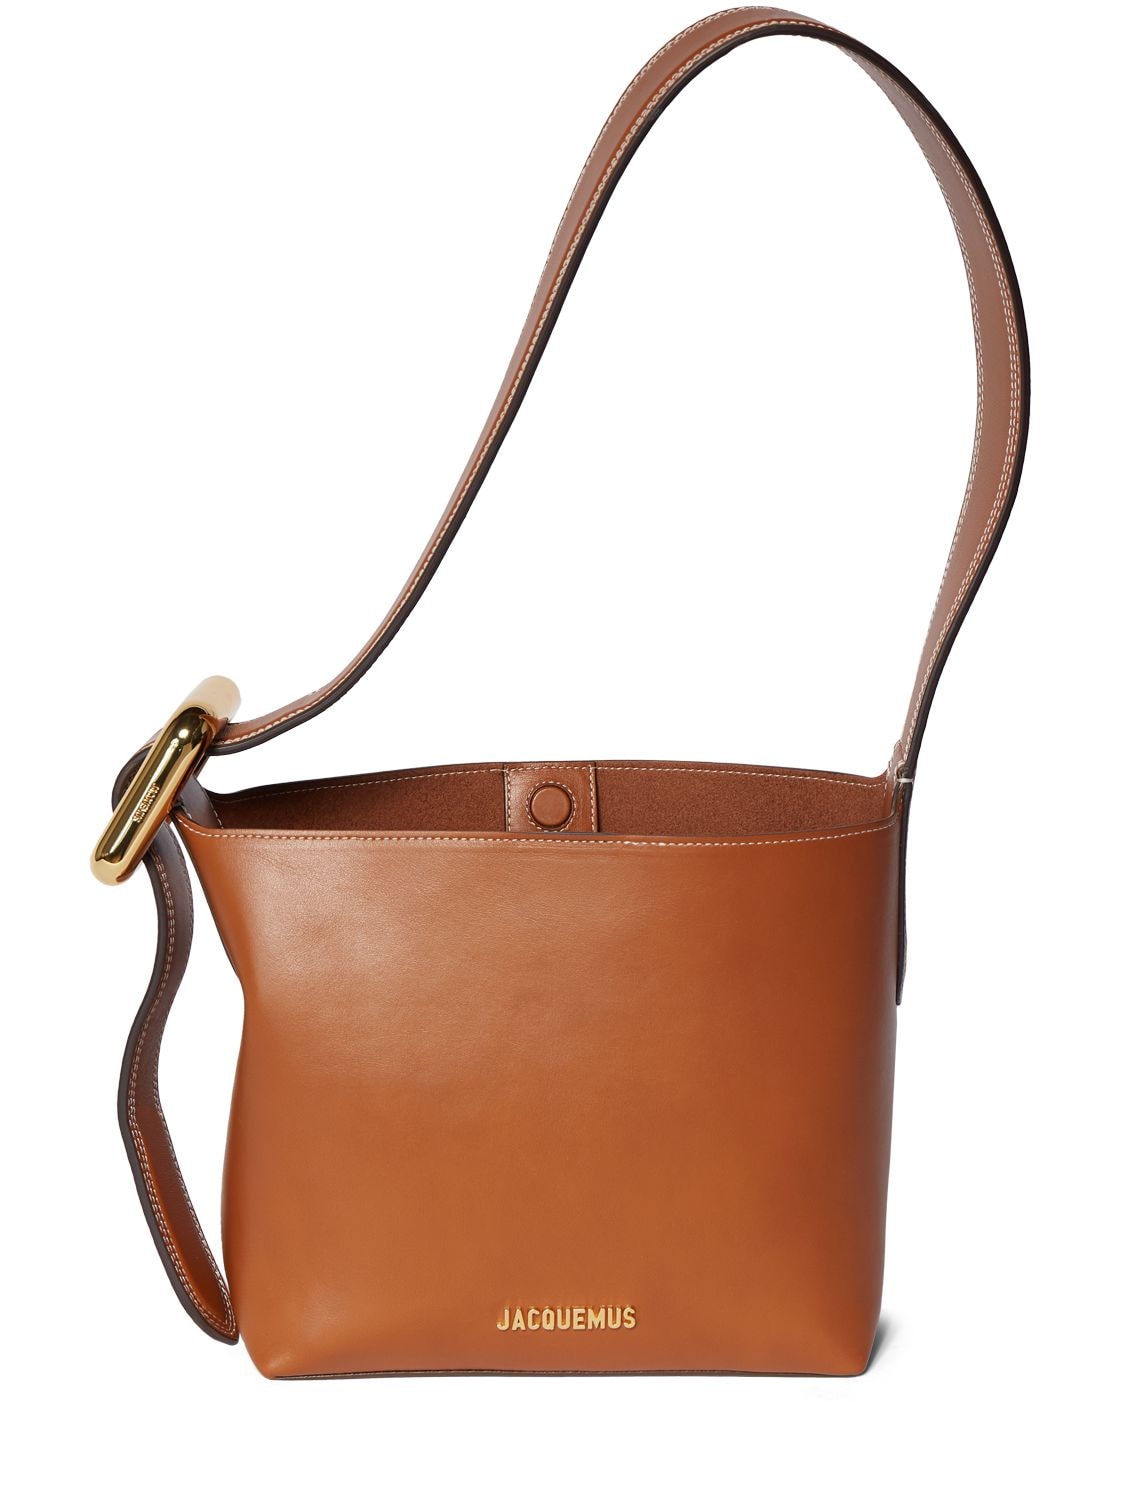 Jacquemus Le Petit Regalo Leather Shoulder Bag In Light Brown